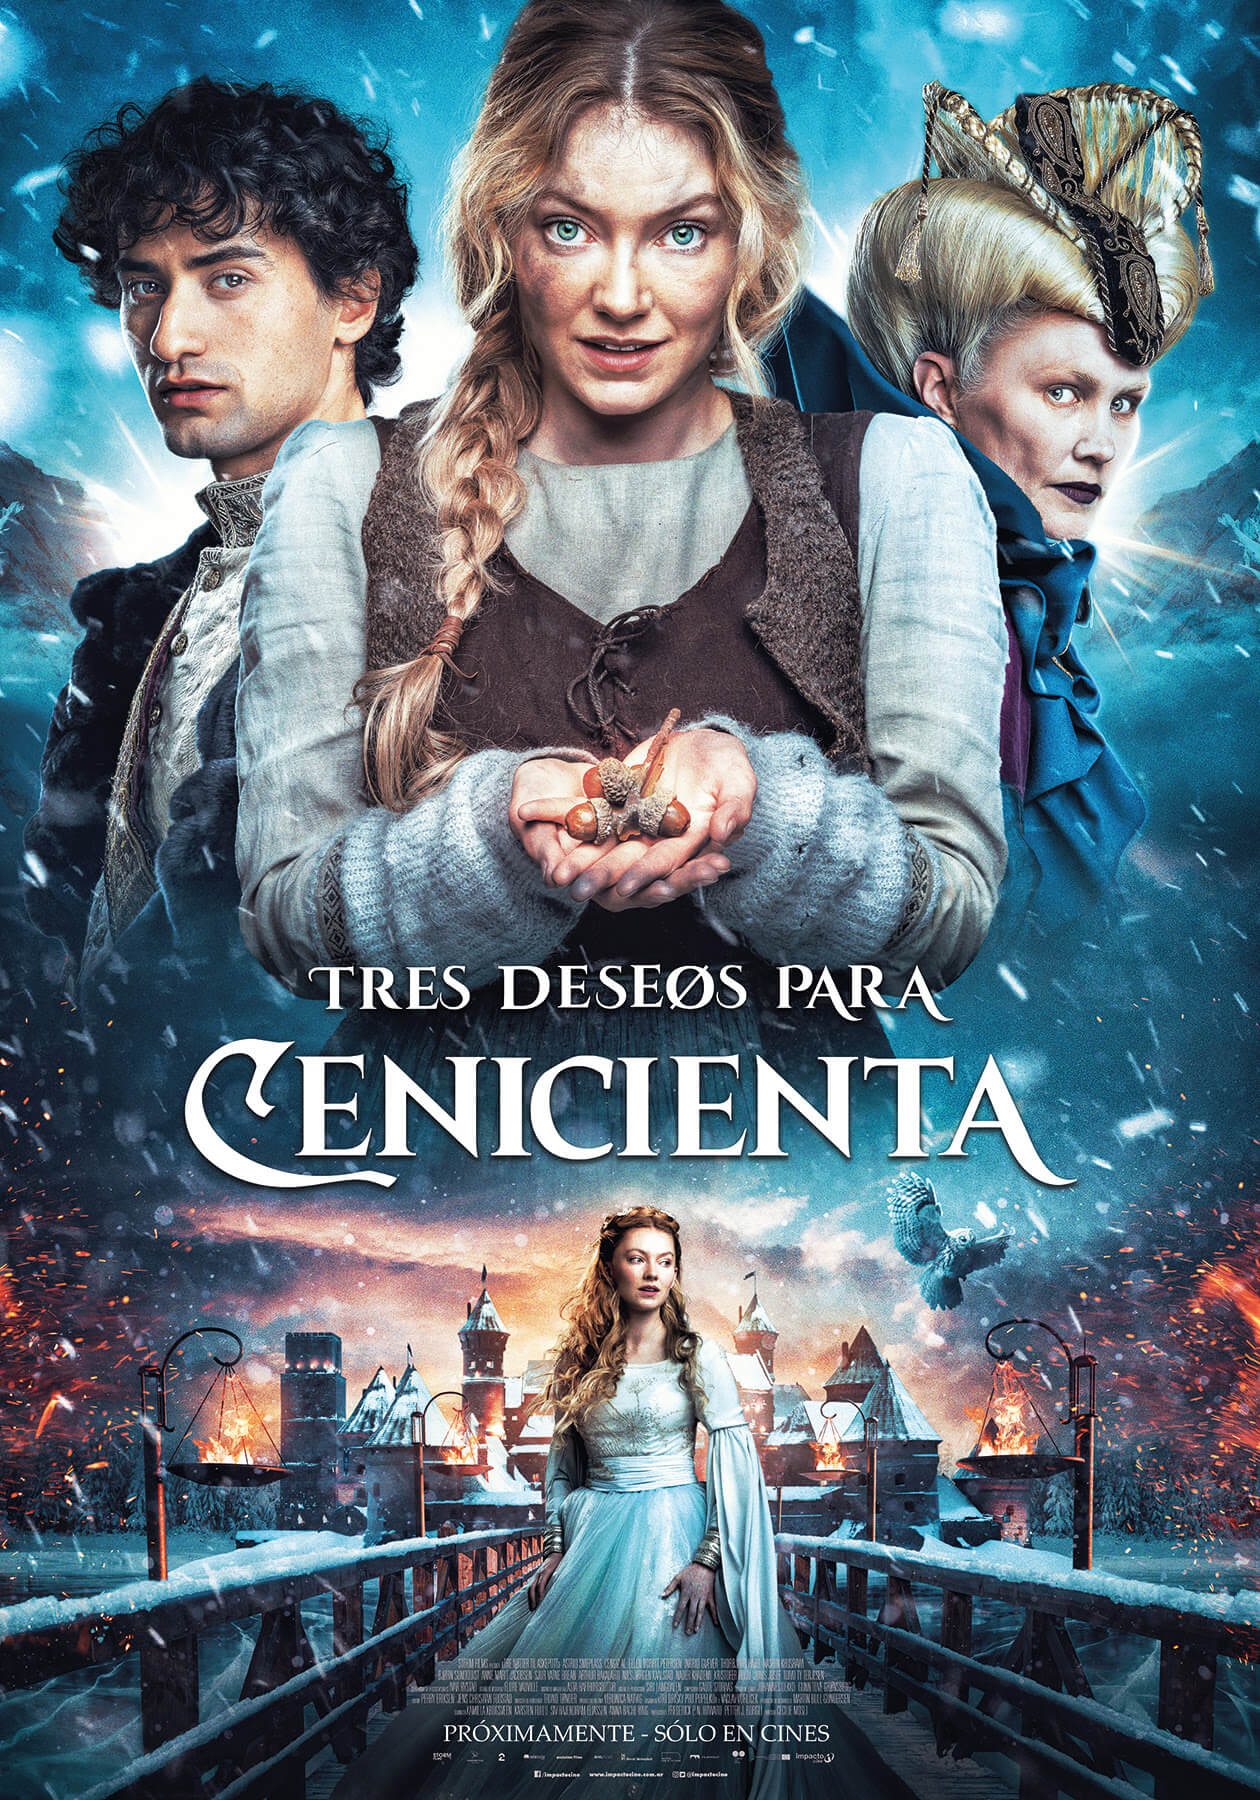 Tres deseos para Cenicienta, se estrena el 12 de enero en las principales  salas – Buenos Aires Press